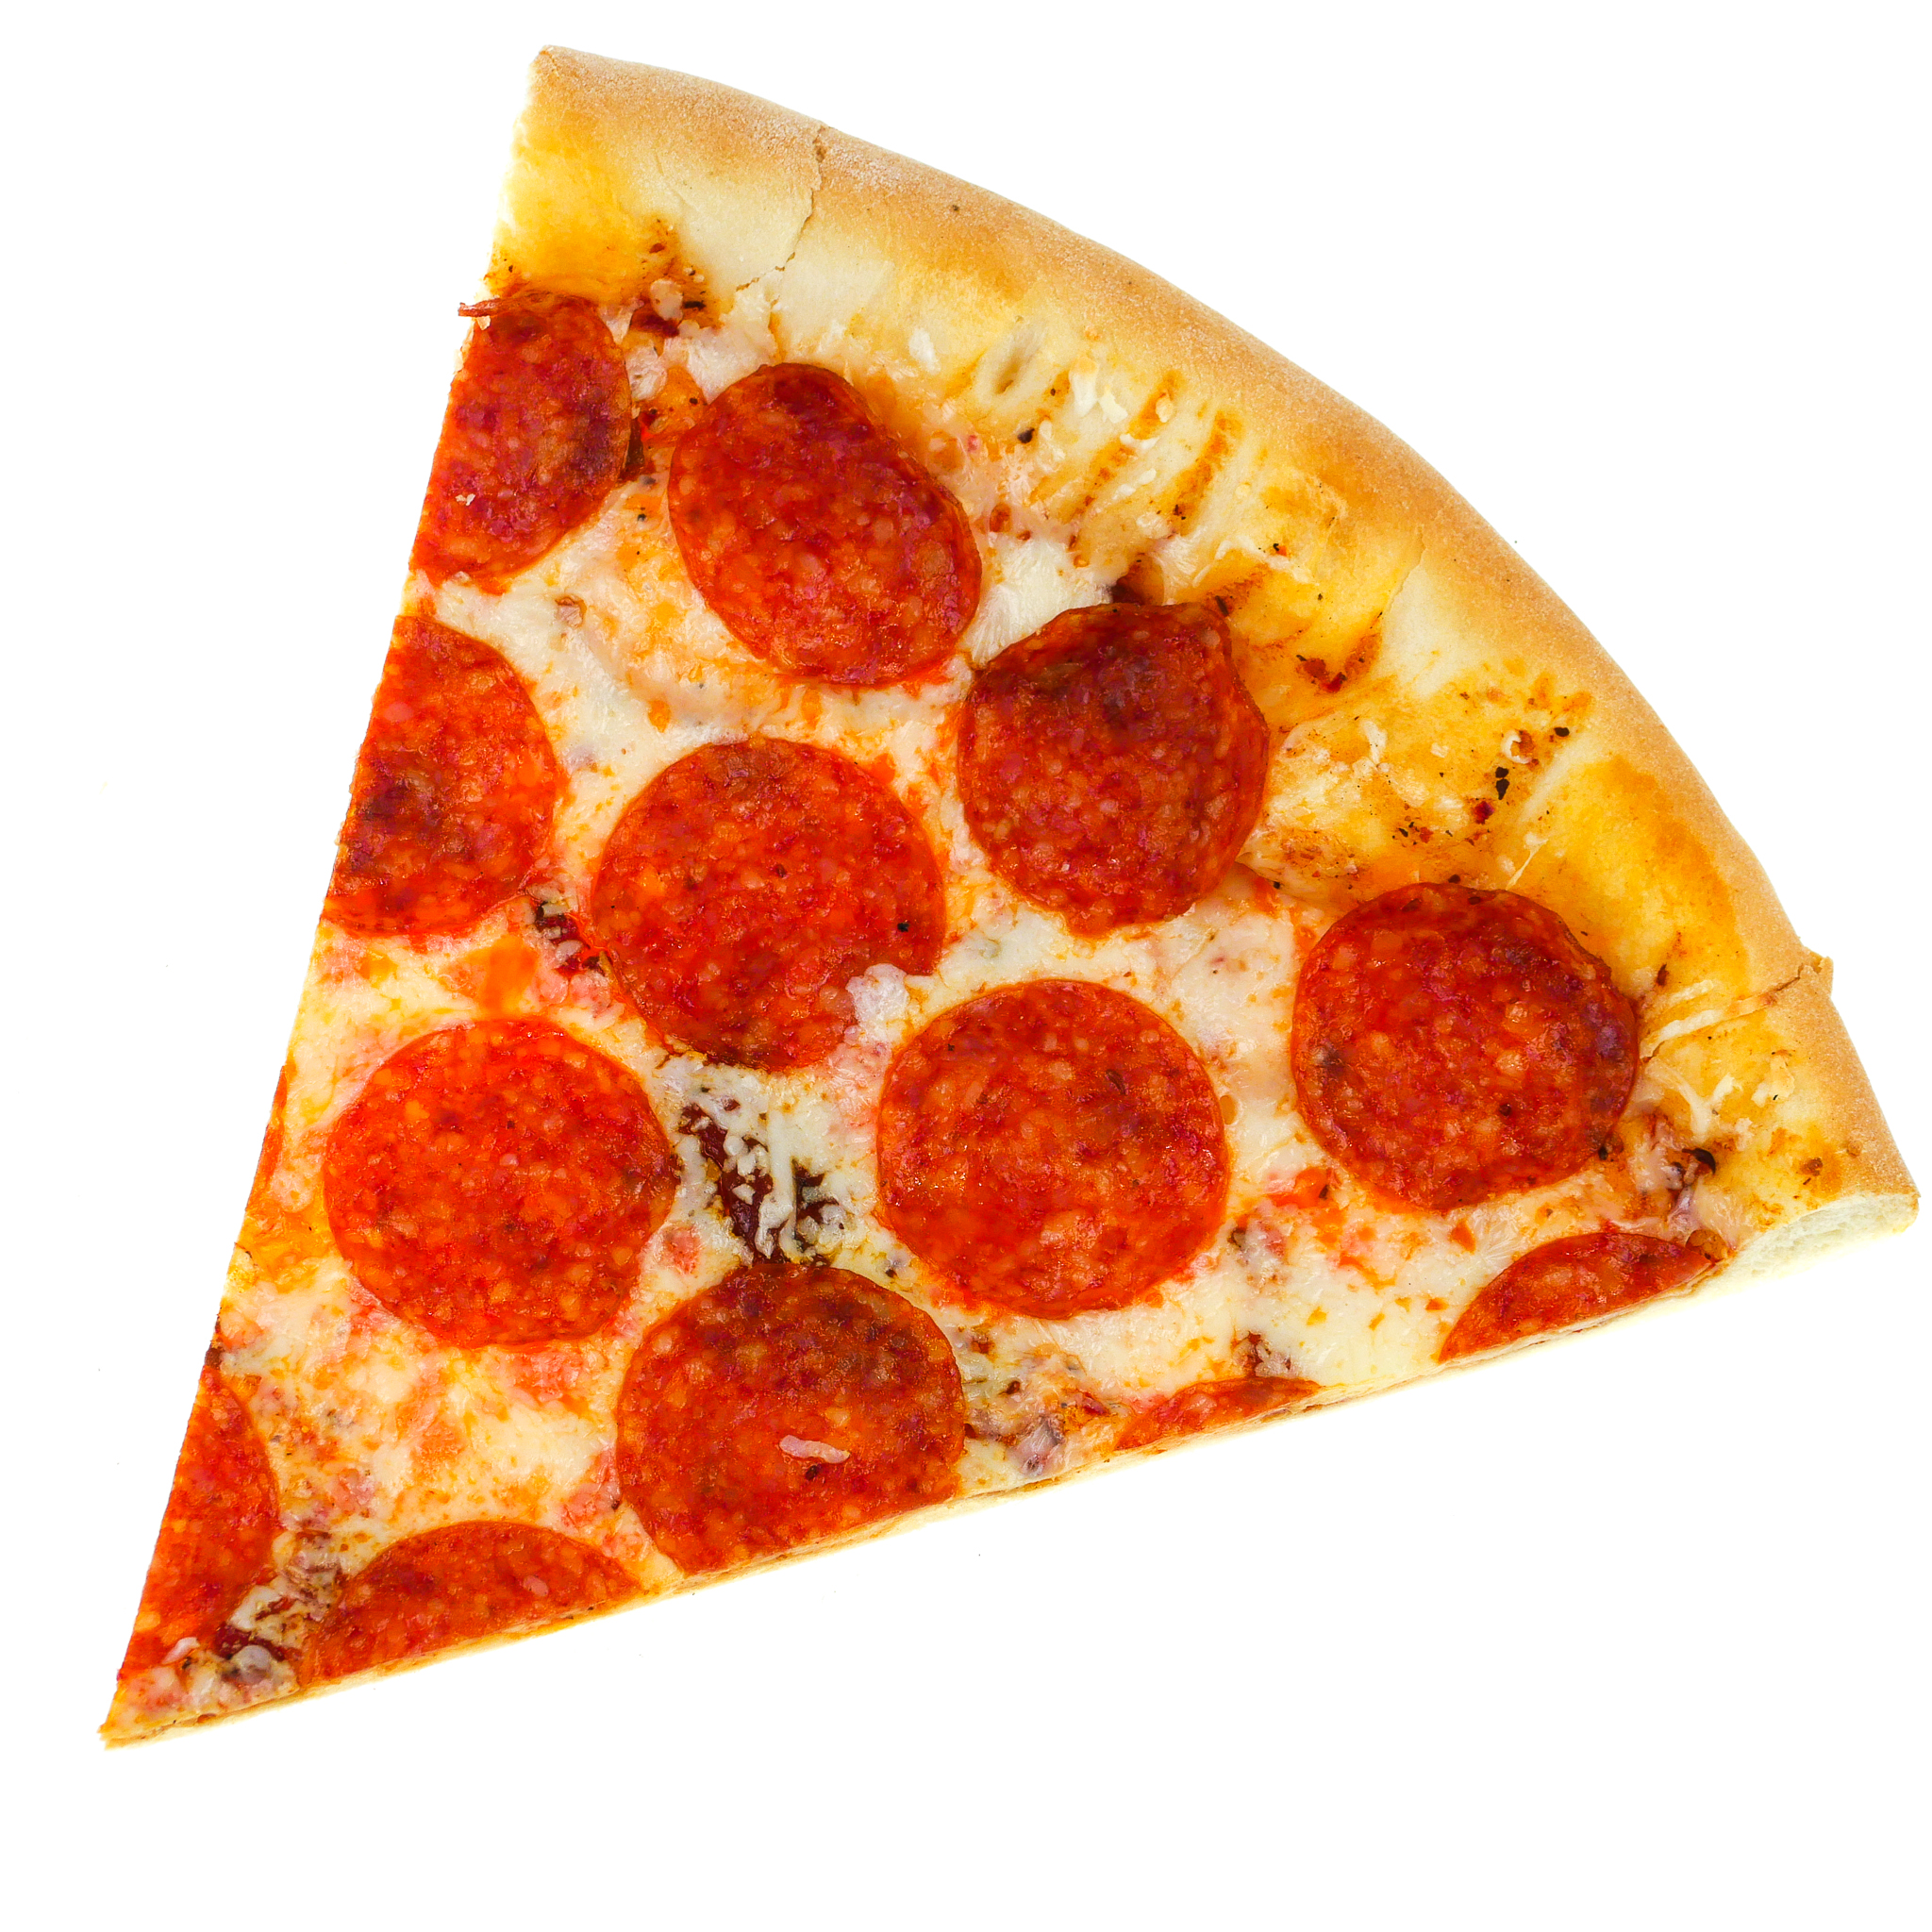 сколько калорий в одном кусочке пиццы пепперони додо фото 30